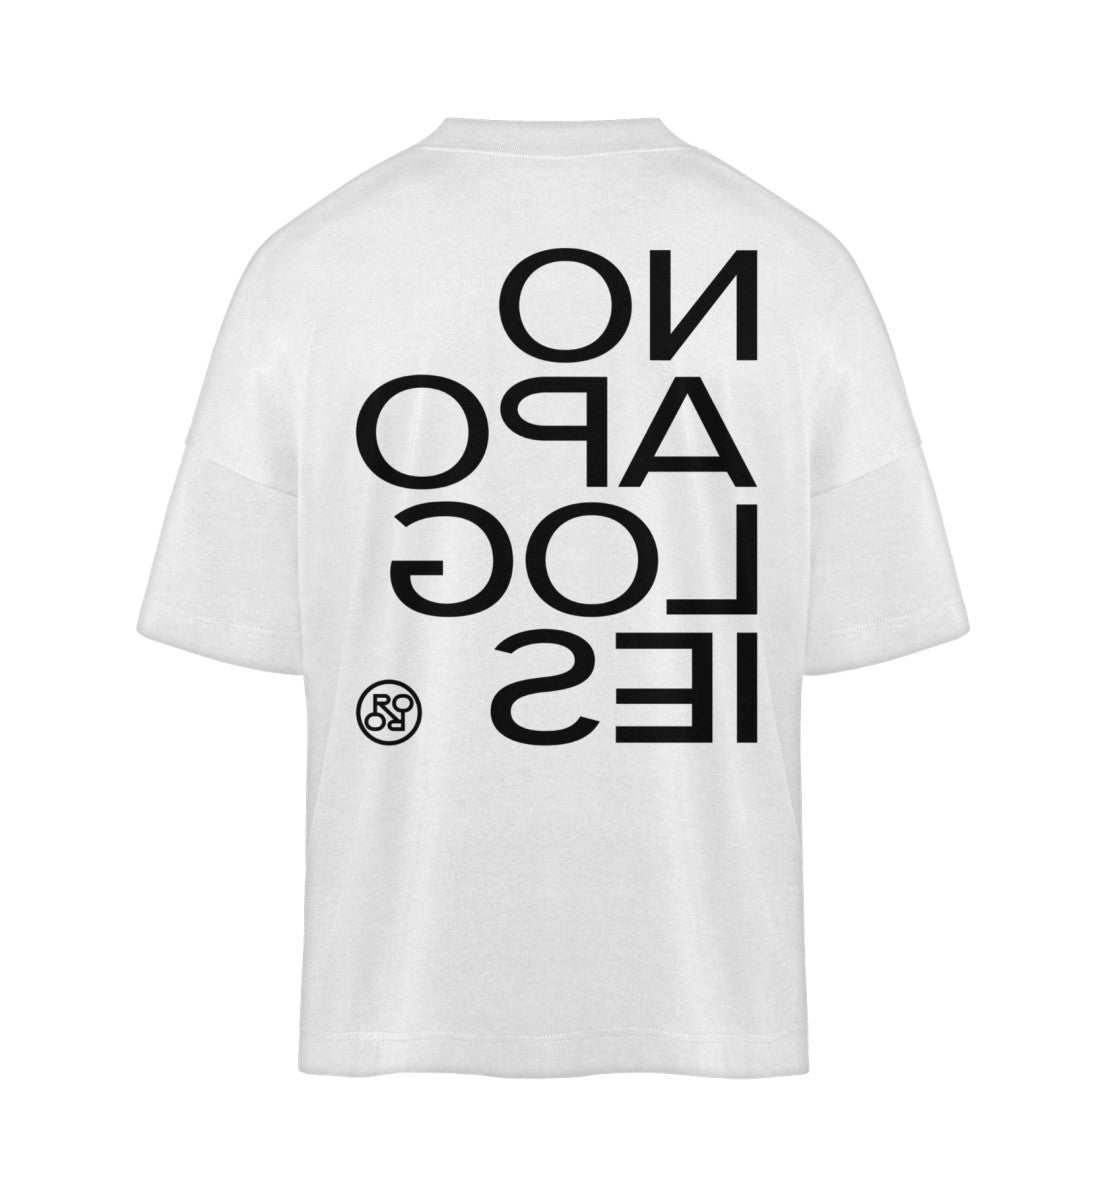 Weißes T-Shirt im Unisex Oversize Fit für Frauen und Männer bedruckt mit dem Design der Roger Rockawoo Kollektion No apologies